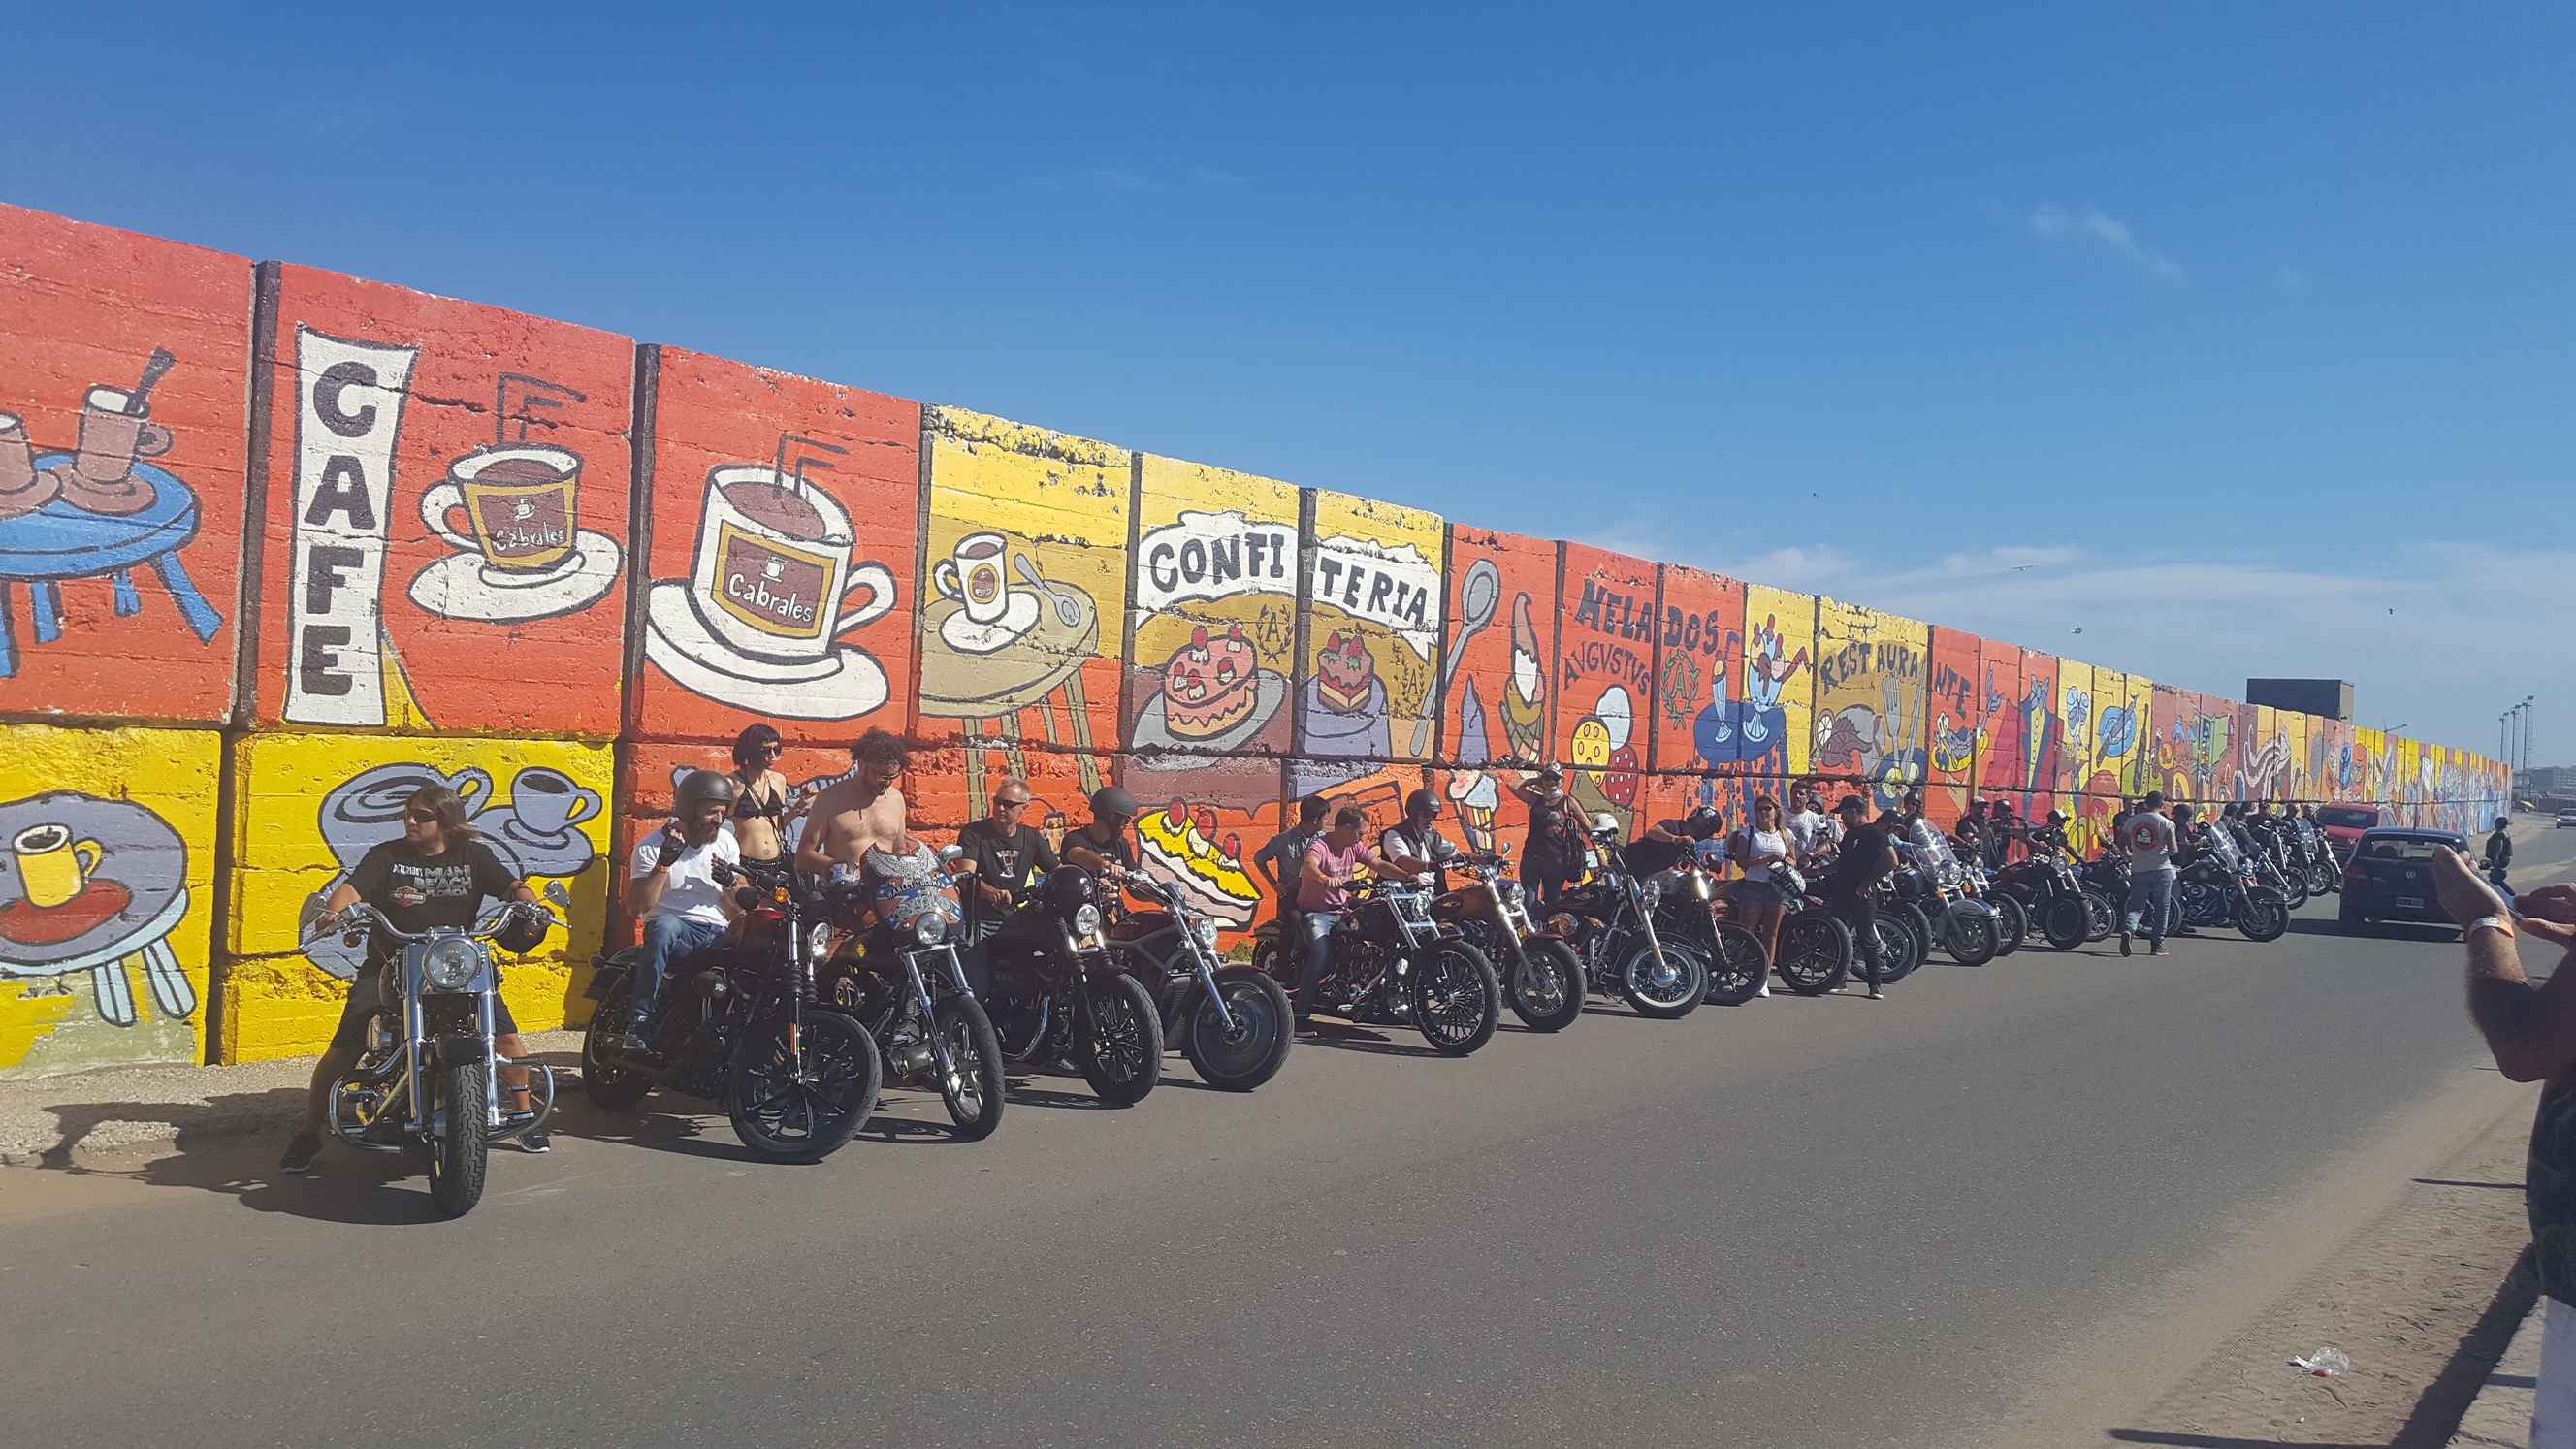 Con el mural de la escollera Sur como telón -uno de los más grandes del mundo- los amigos de las Harley Davidson se llevaron la foto de recuerdo